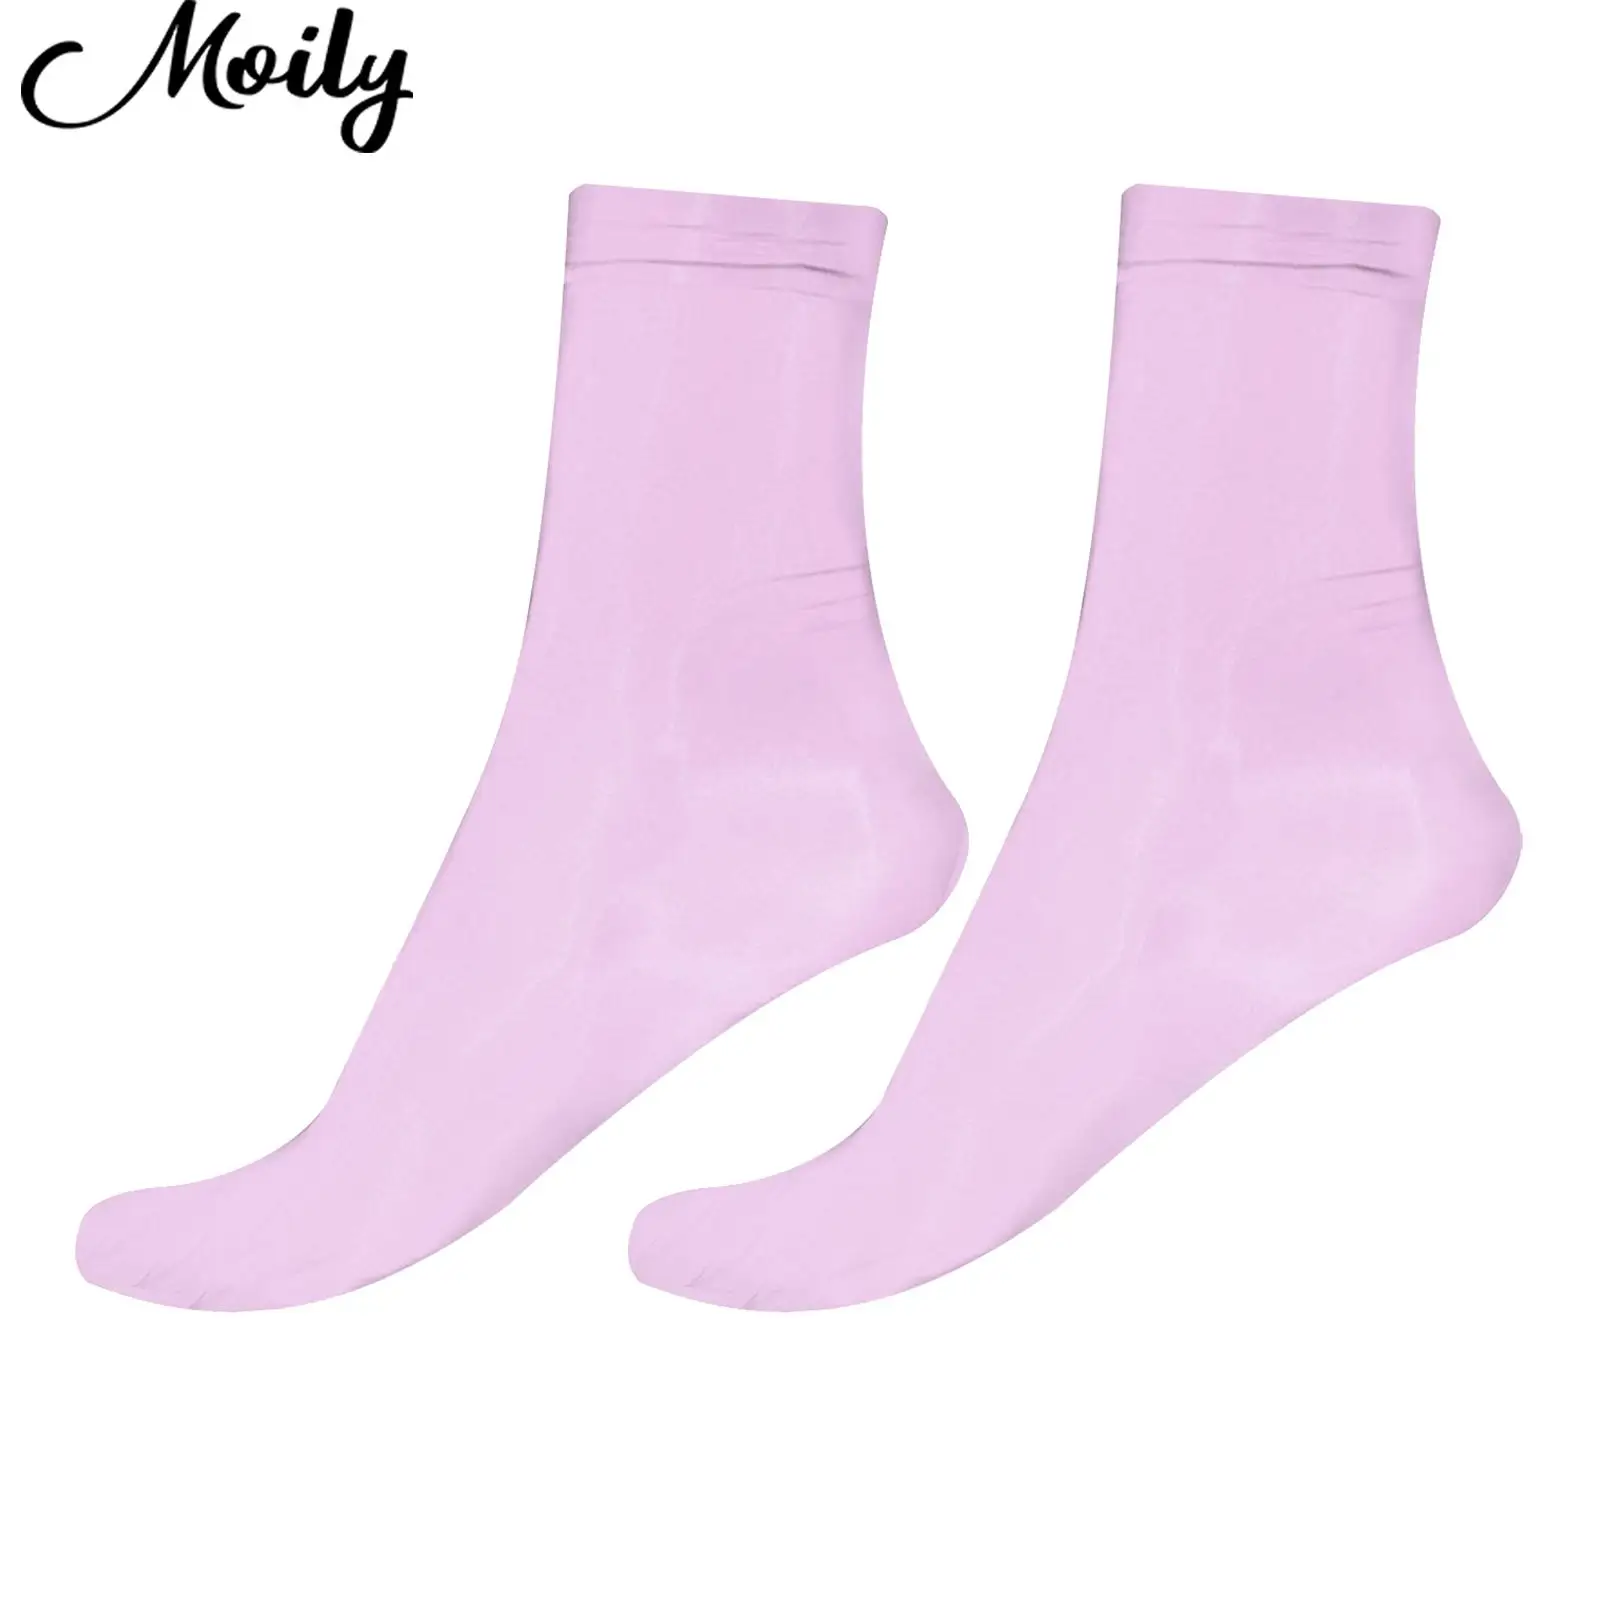 

Носки блестящие нейлоновые чулки ярких цветов мужские ультратонкие прозрачные гольфы высокой эластичности для мужчин и женщин